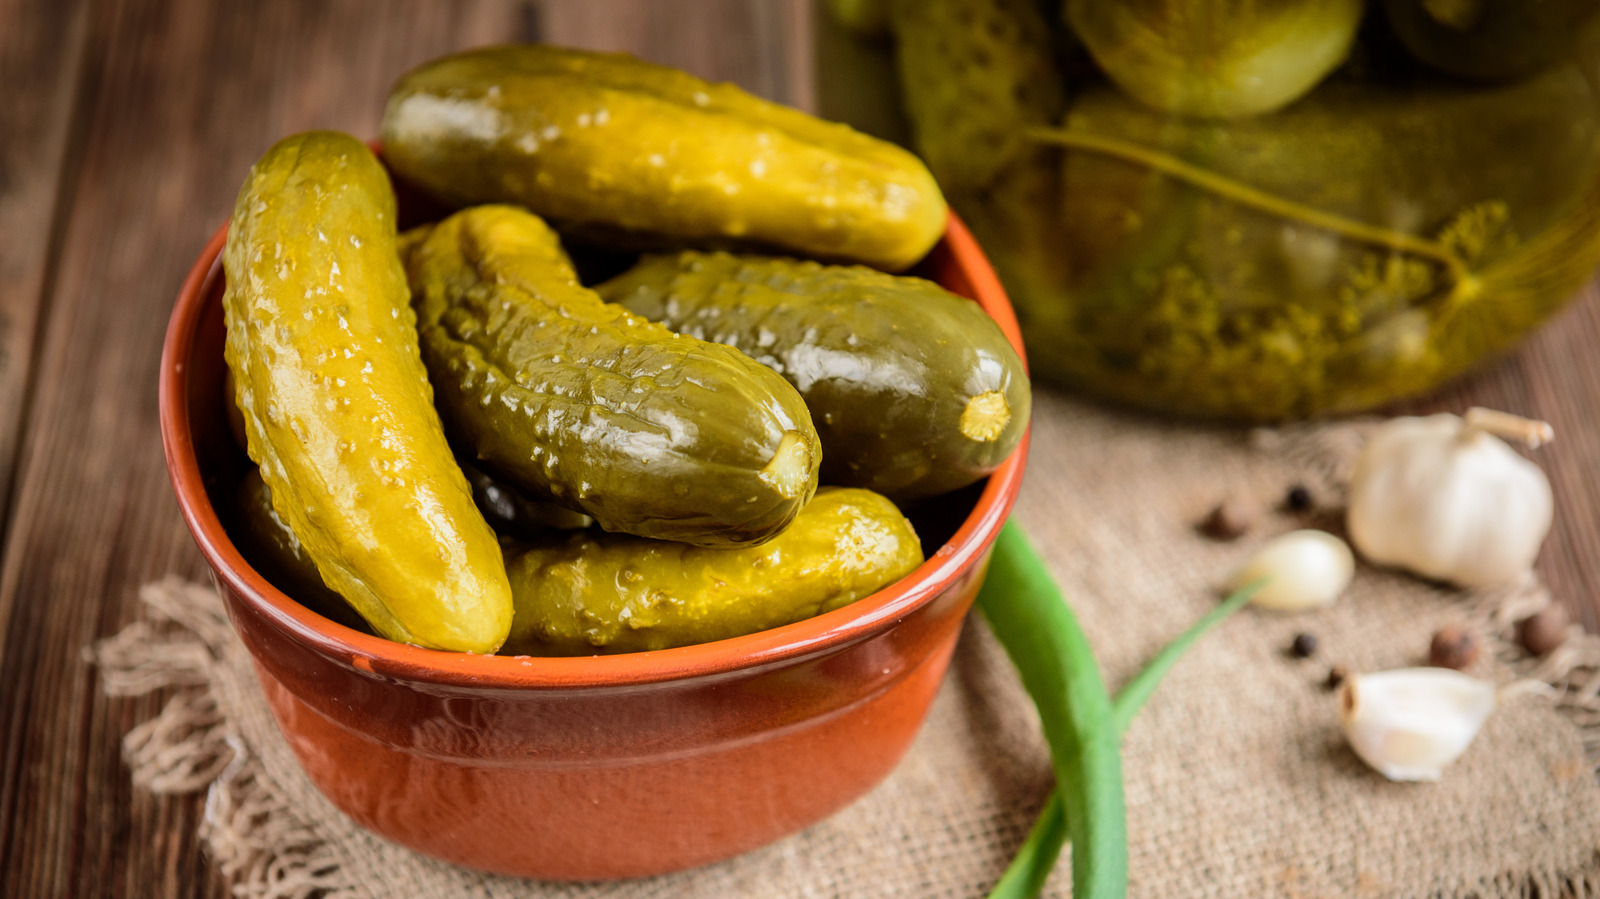 New pickle seasoning : r/traderjoes